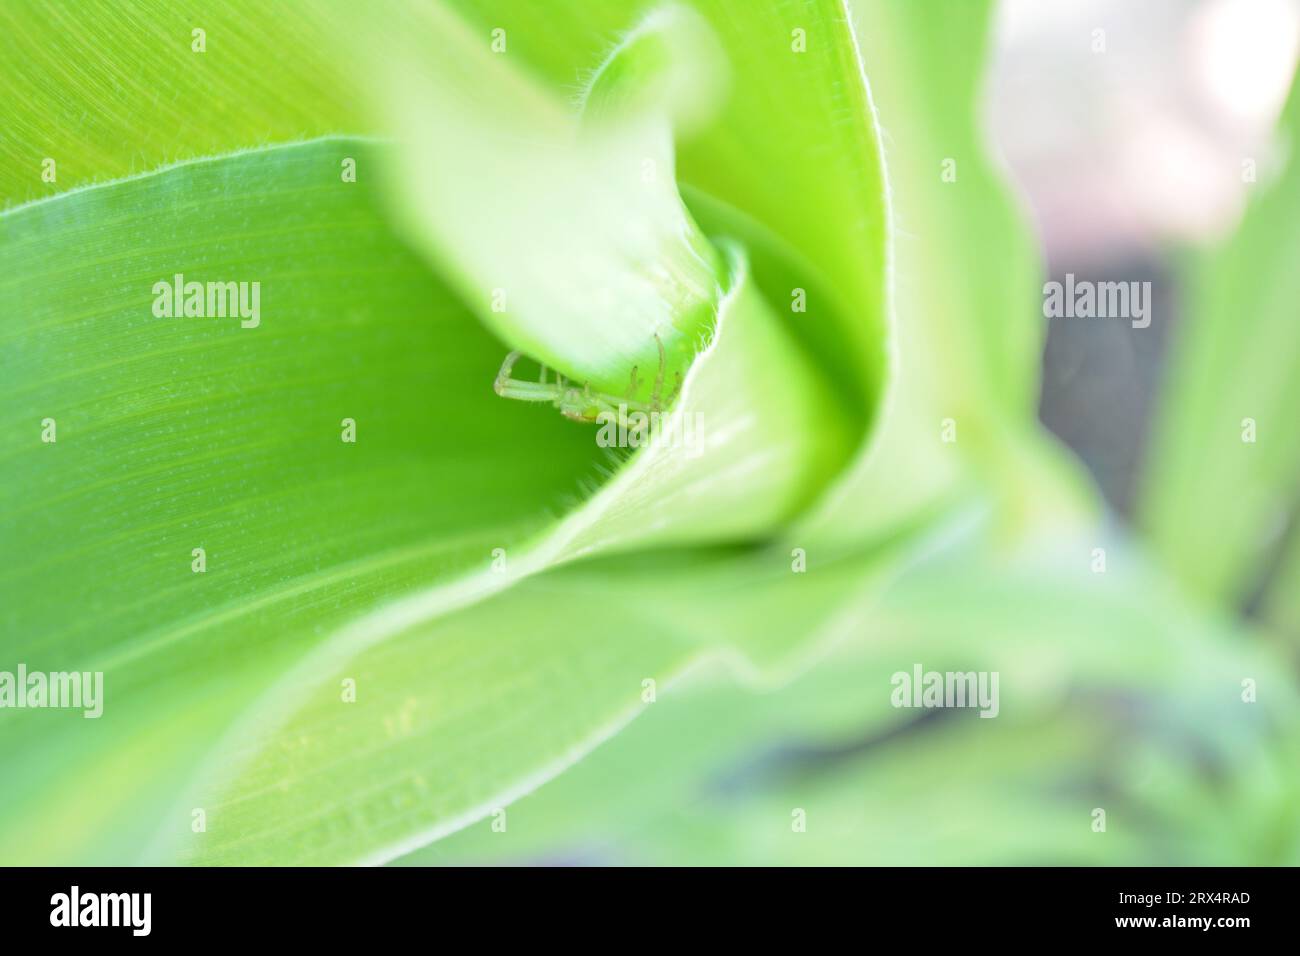 Astucieusement dissimulée dans la plante de maïs, une minuscule araignée verte attend patiemment sa proie sans méfiance. Le prédateur secret de la nature. Banque D'Images